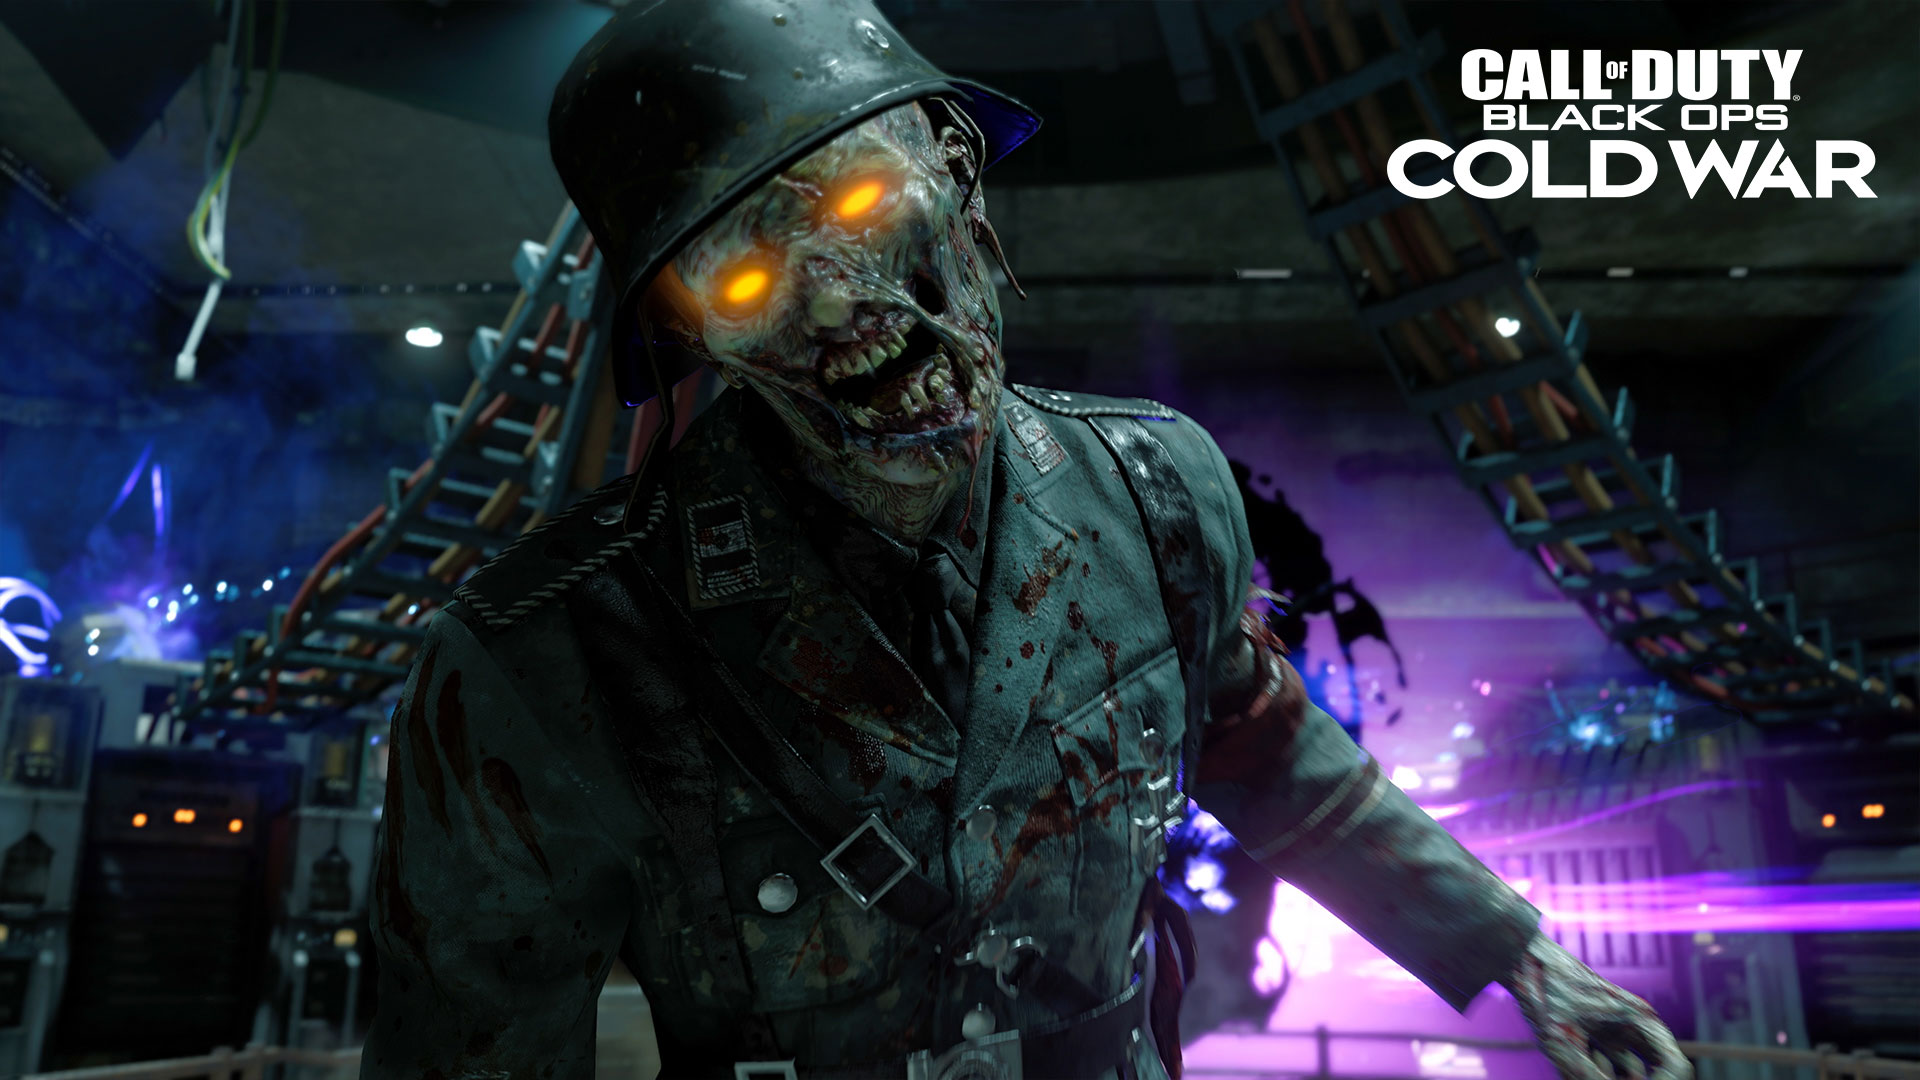 Зомби-режим Call of Duty: Black Ops Cold War - видео и первые подробности.